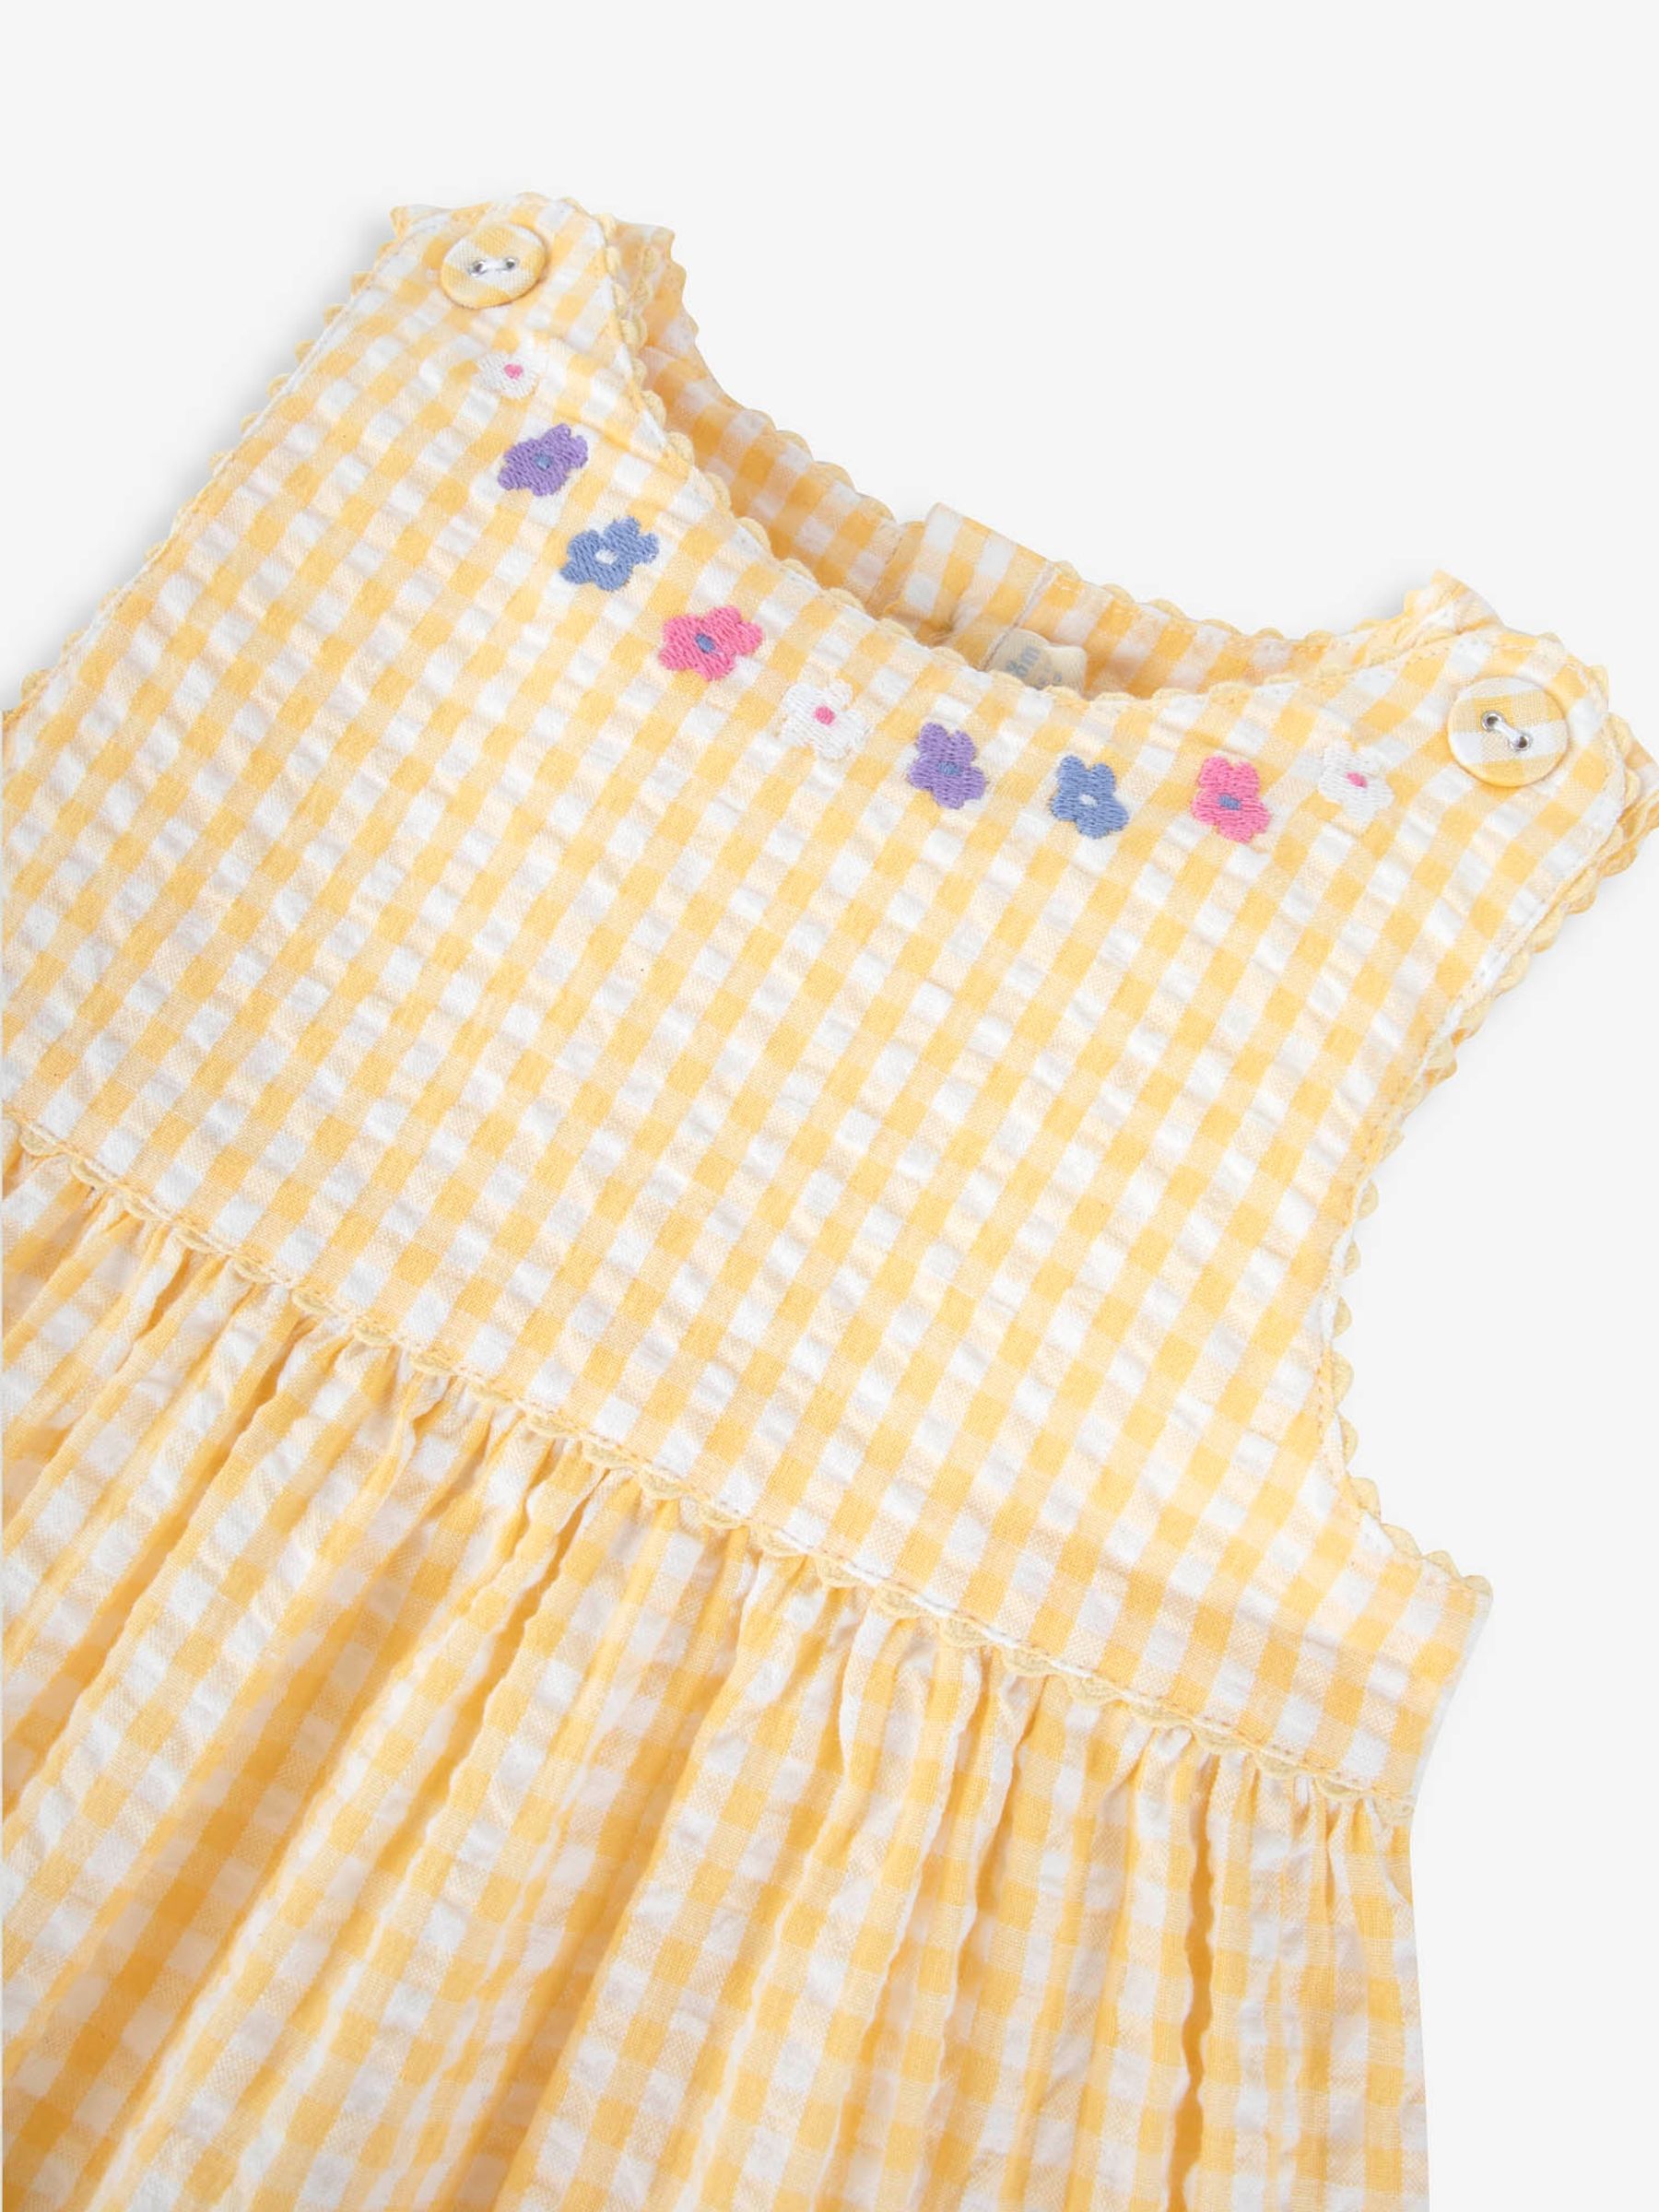 Buy Yellow Gingham Mouse Appliqué Dress from the JoJo Maman Bébé UK ...